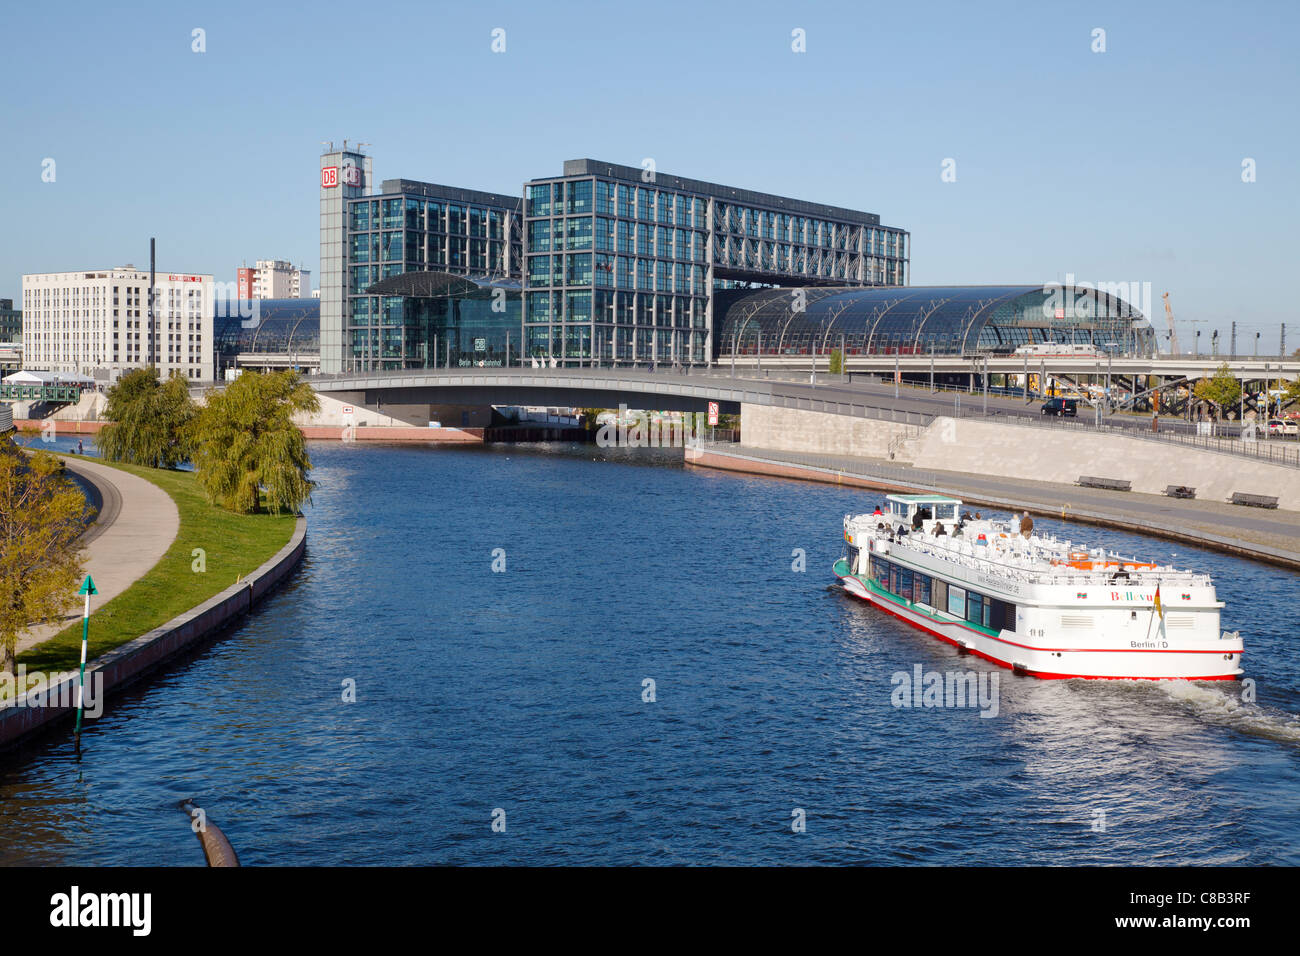 Hauptbahnhof and River Spree, Berlin, Germany Stock Photo